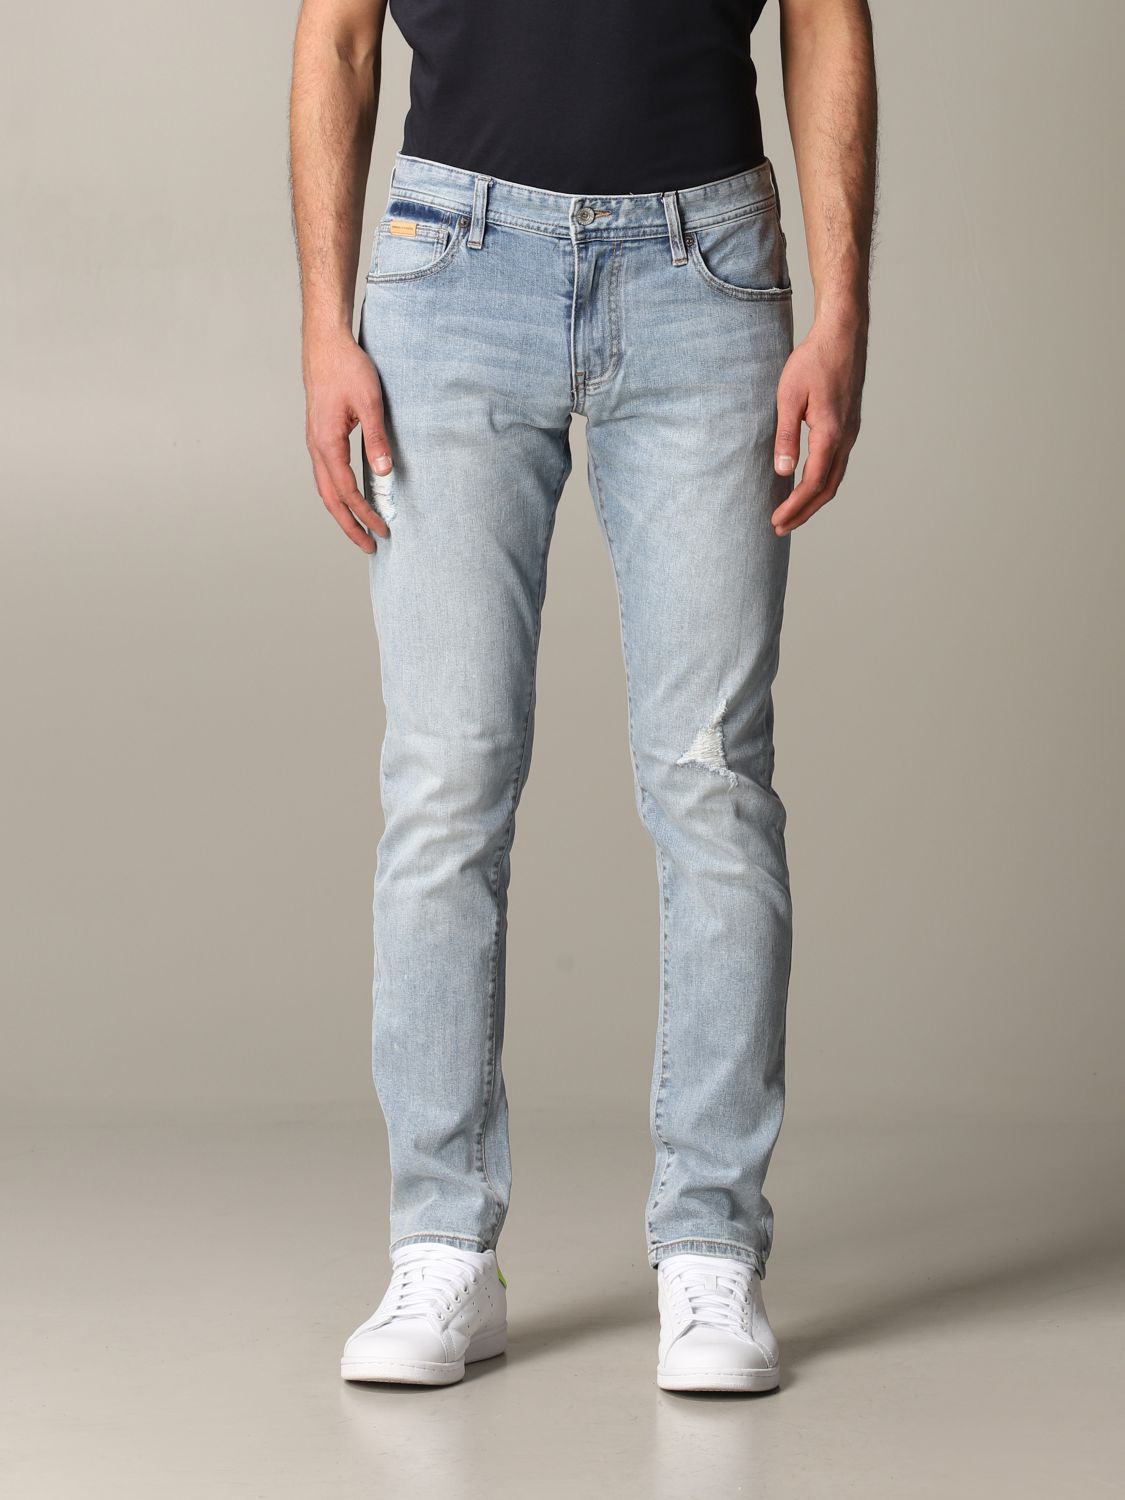 jeans mens skinny,nalan.com.sg